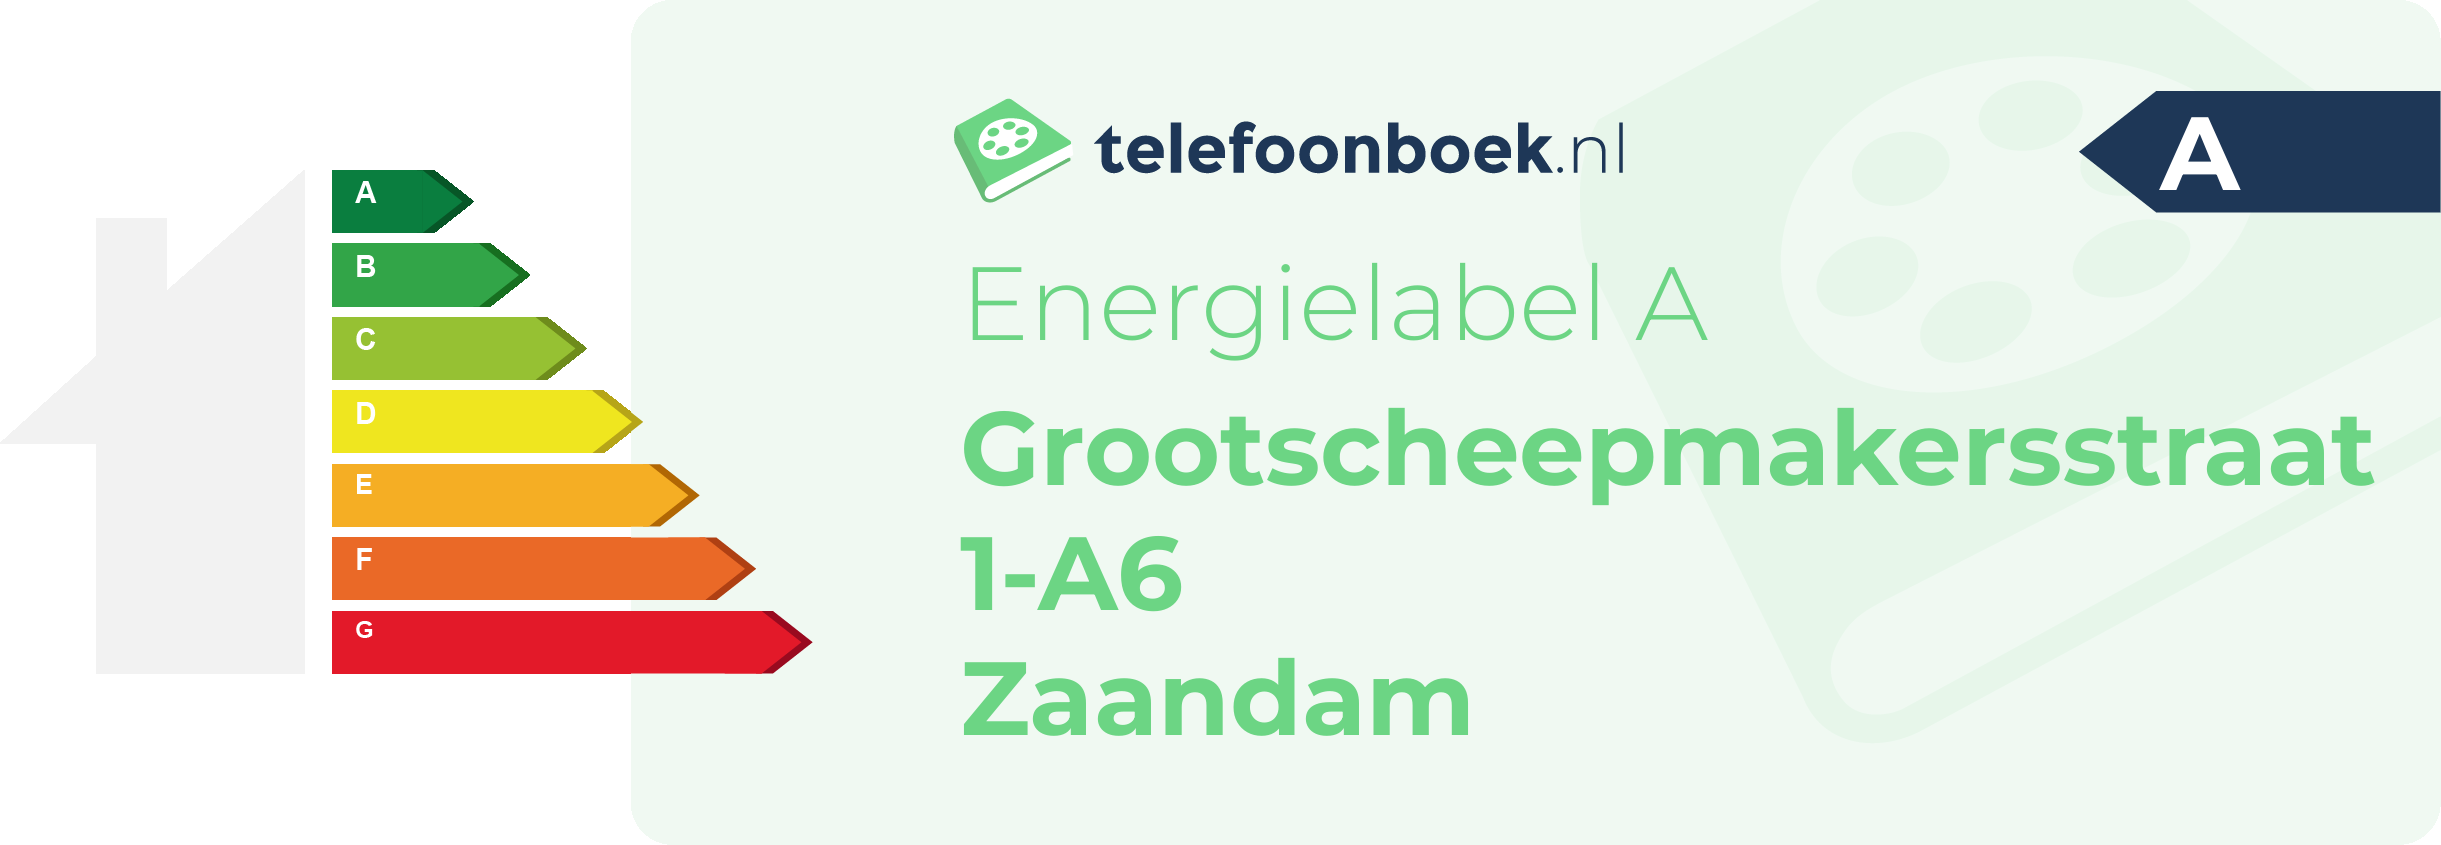 Energielabel Grootscheepmakersstraat 1-A6 Zaandam